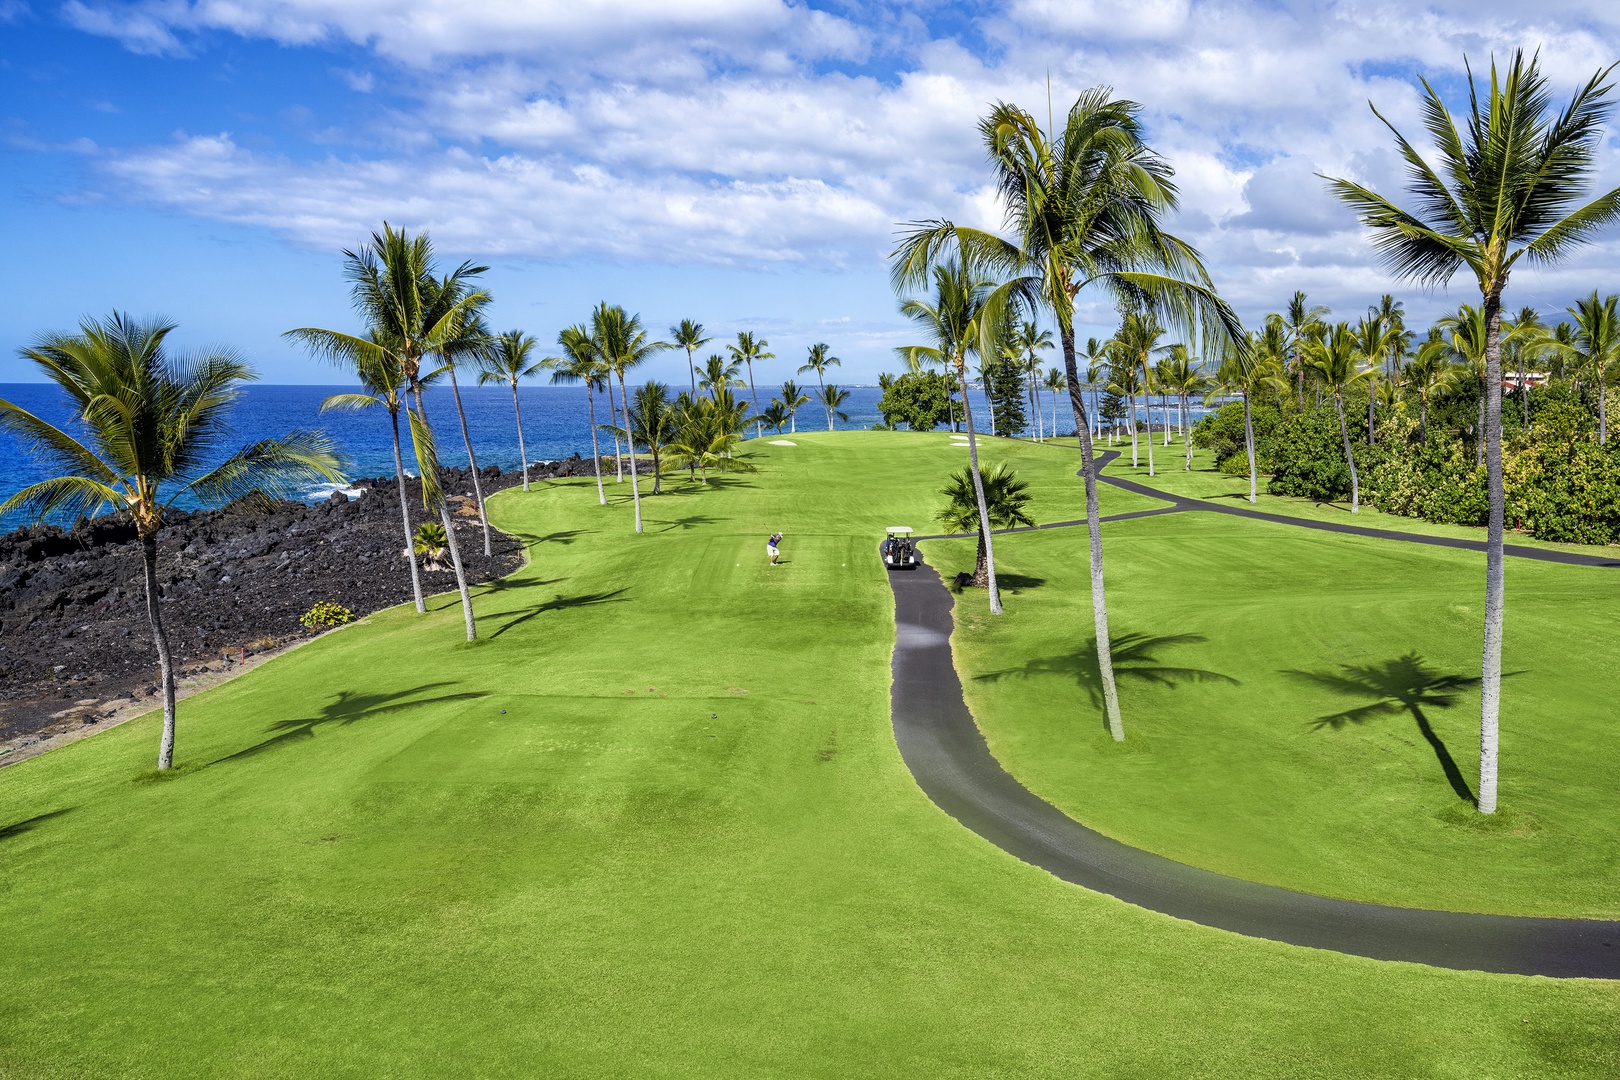 Kailua Kona Vacation Rentals, Kanaloa at Kona 1606 - Breathtaking views from the Lanai!